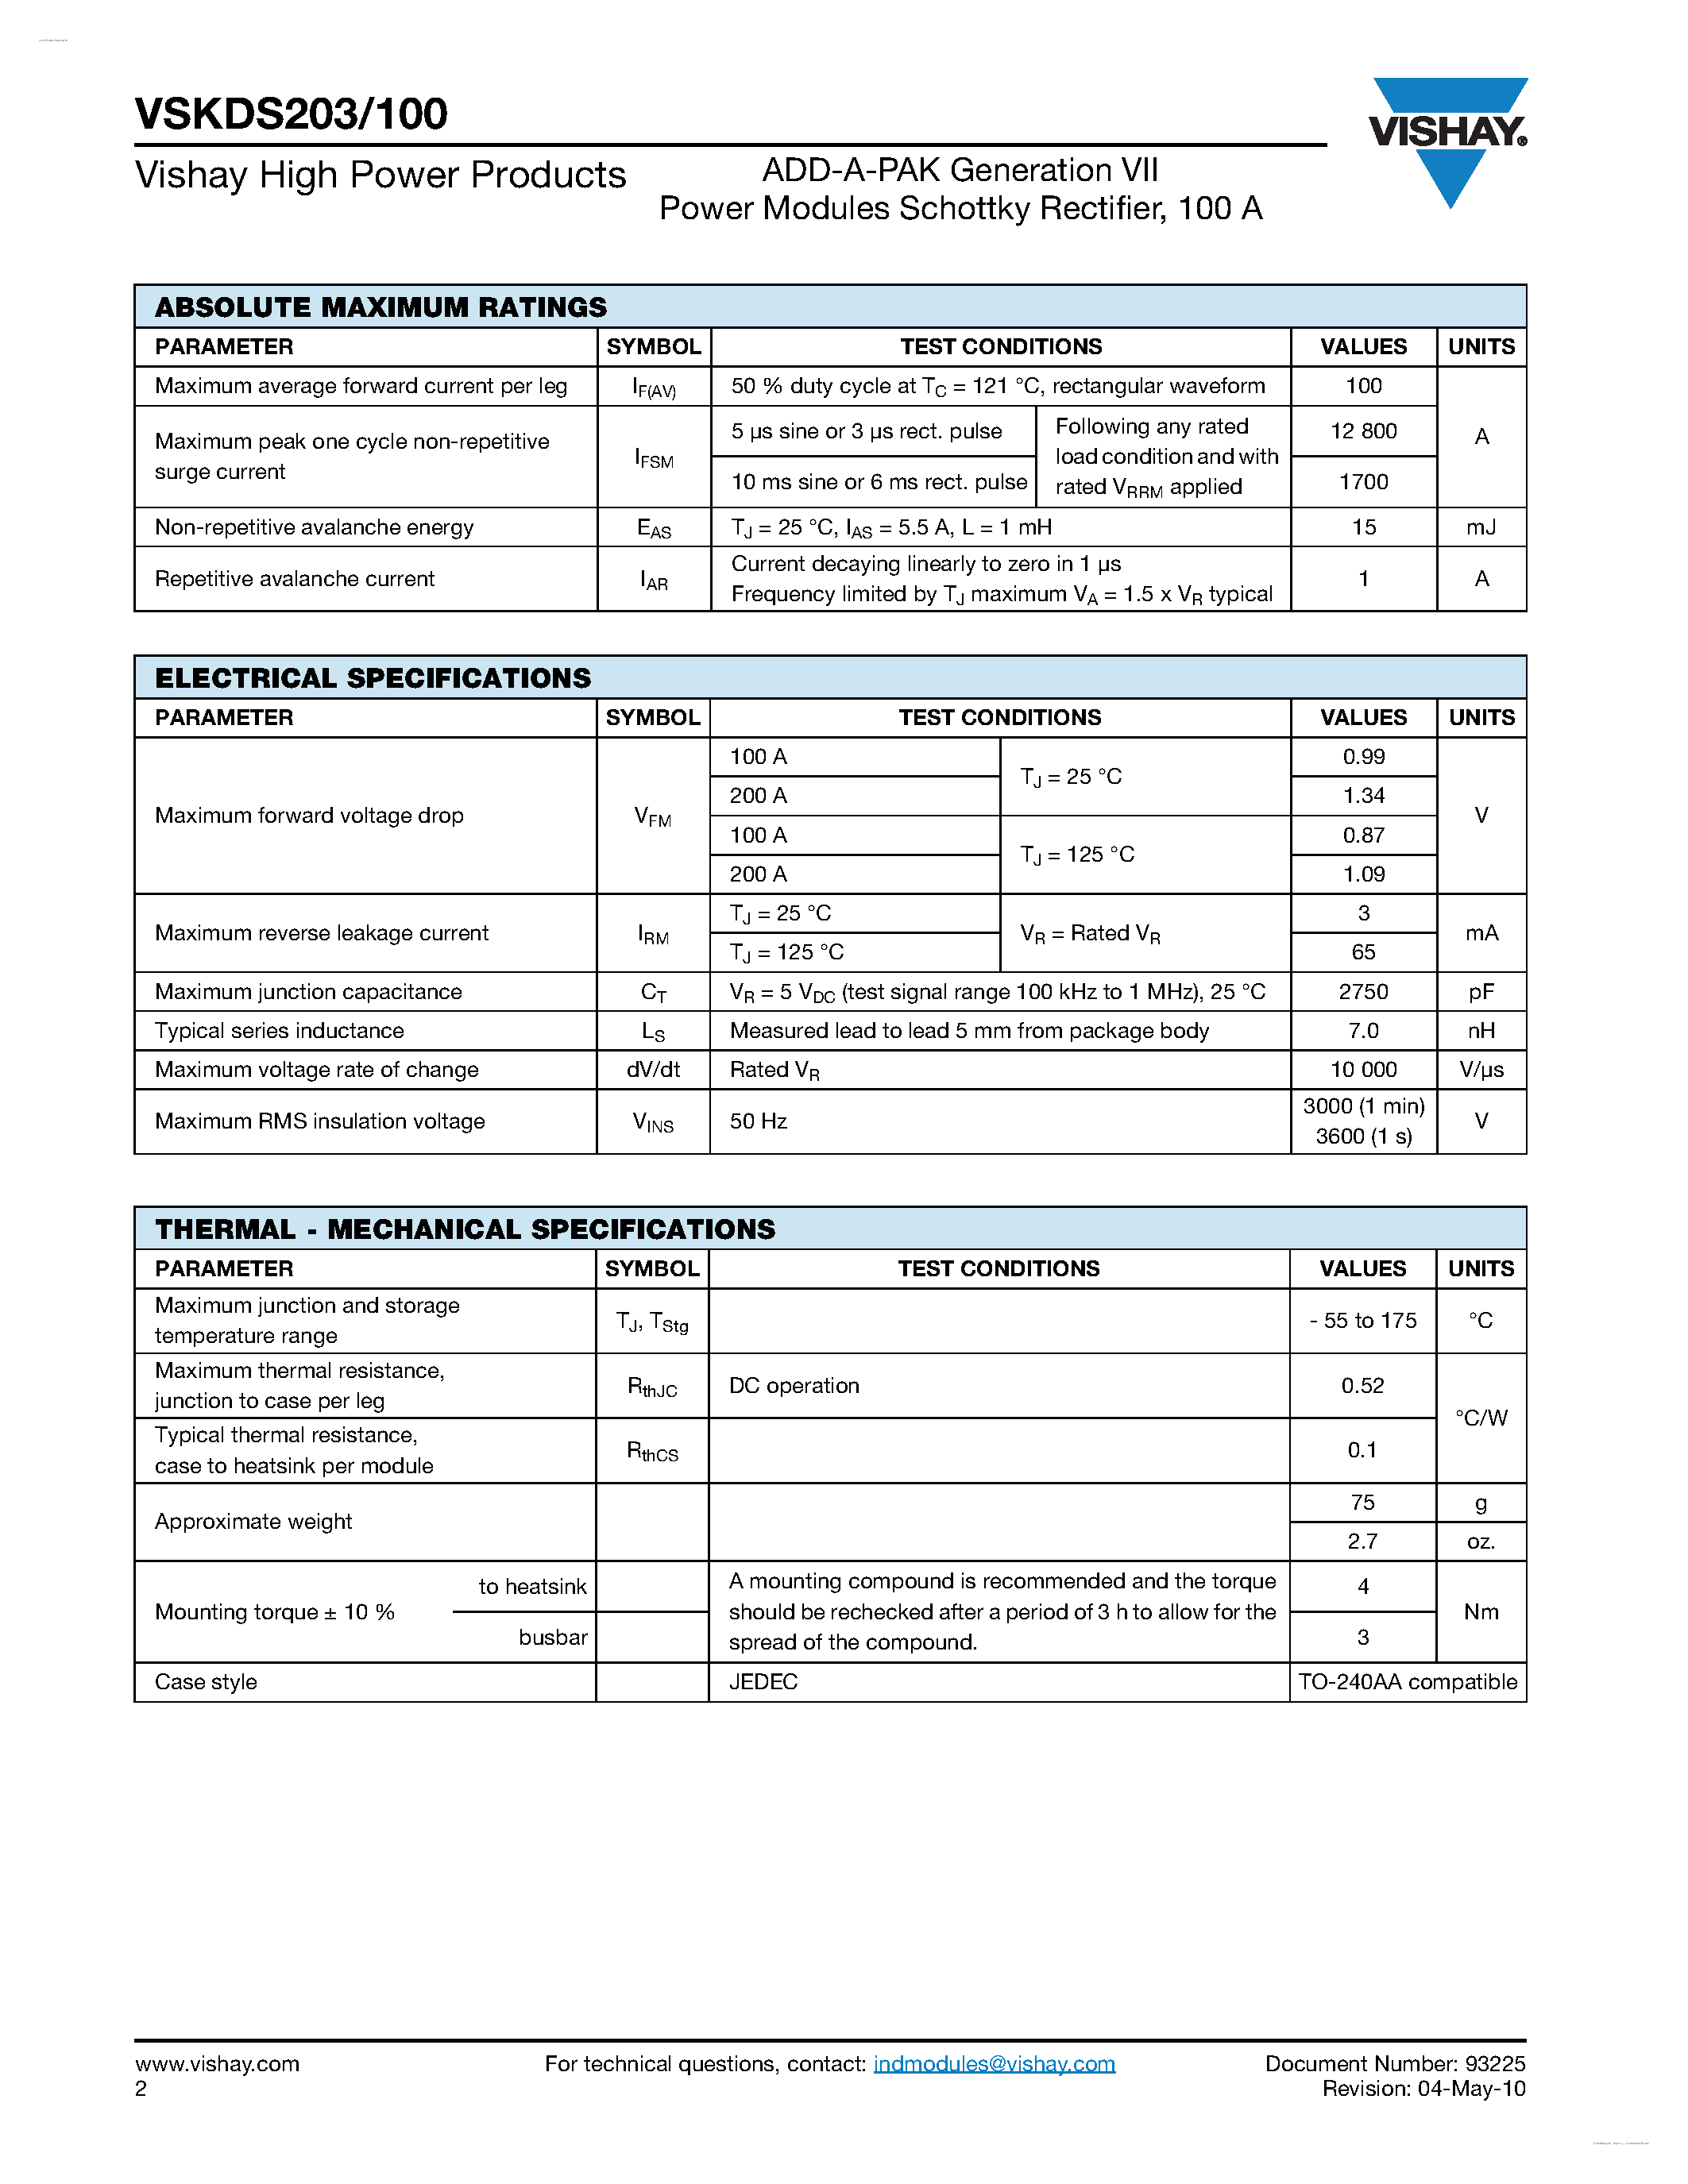 Datasheet VSKDS203/100 - ADD-A-PAK Generation VII page 2